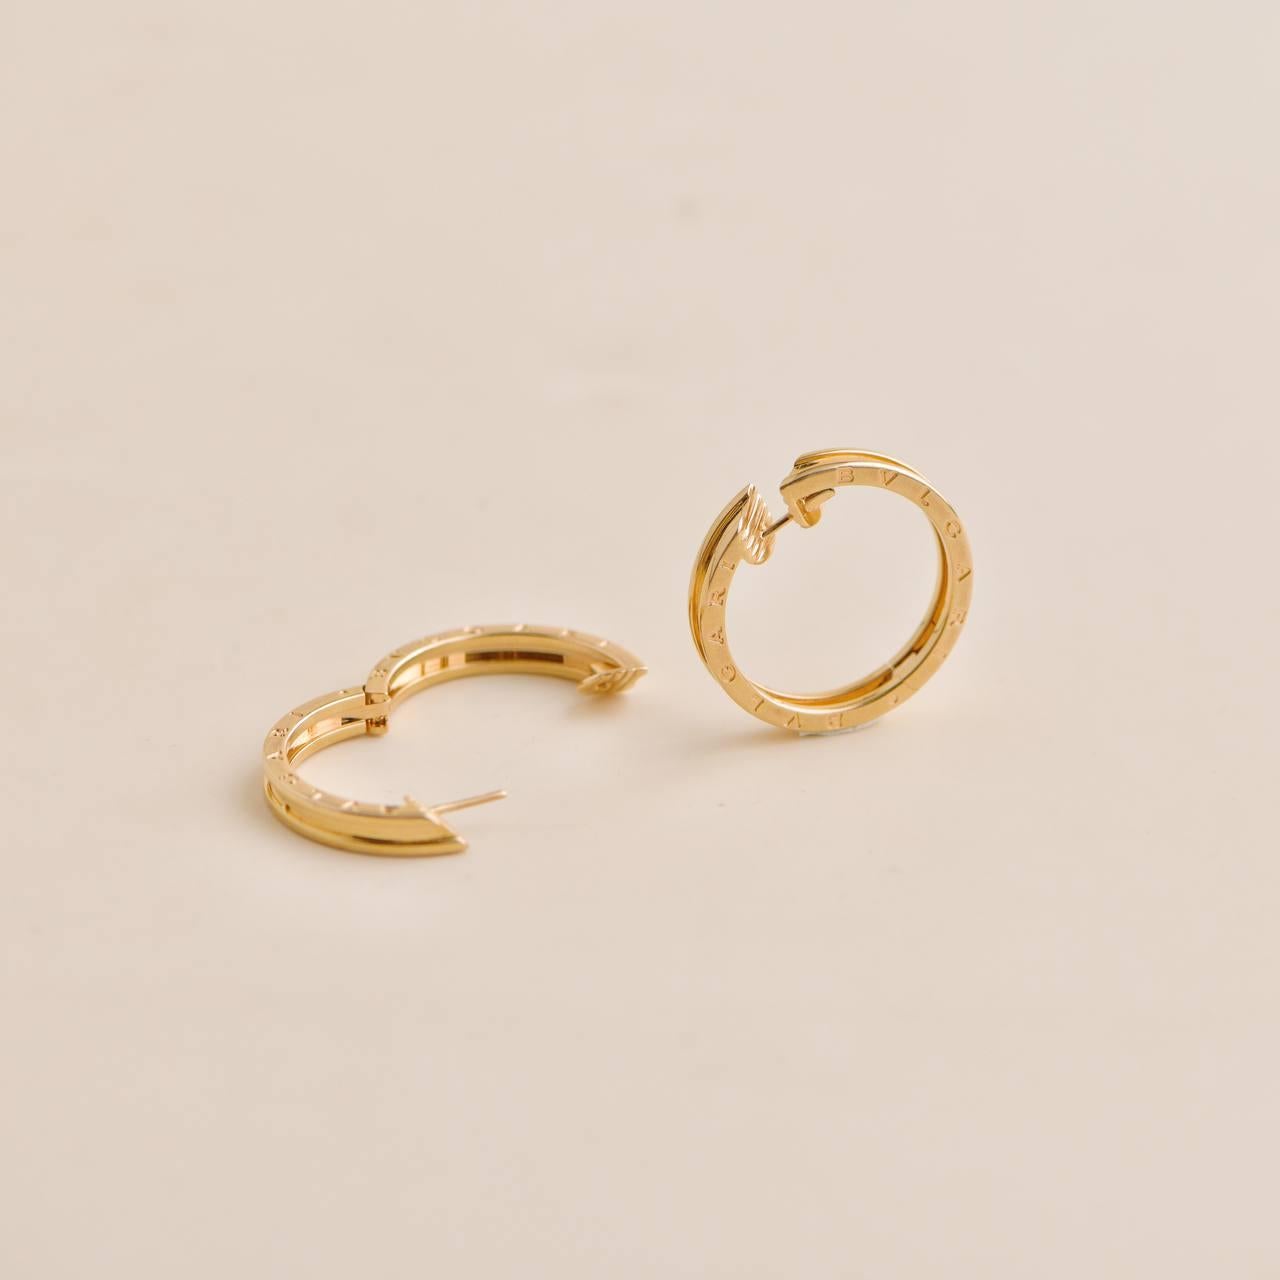 bvlgari hoop earrings gold